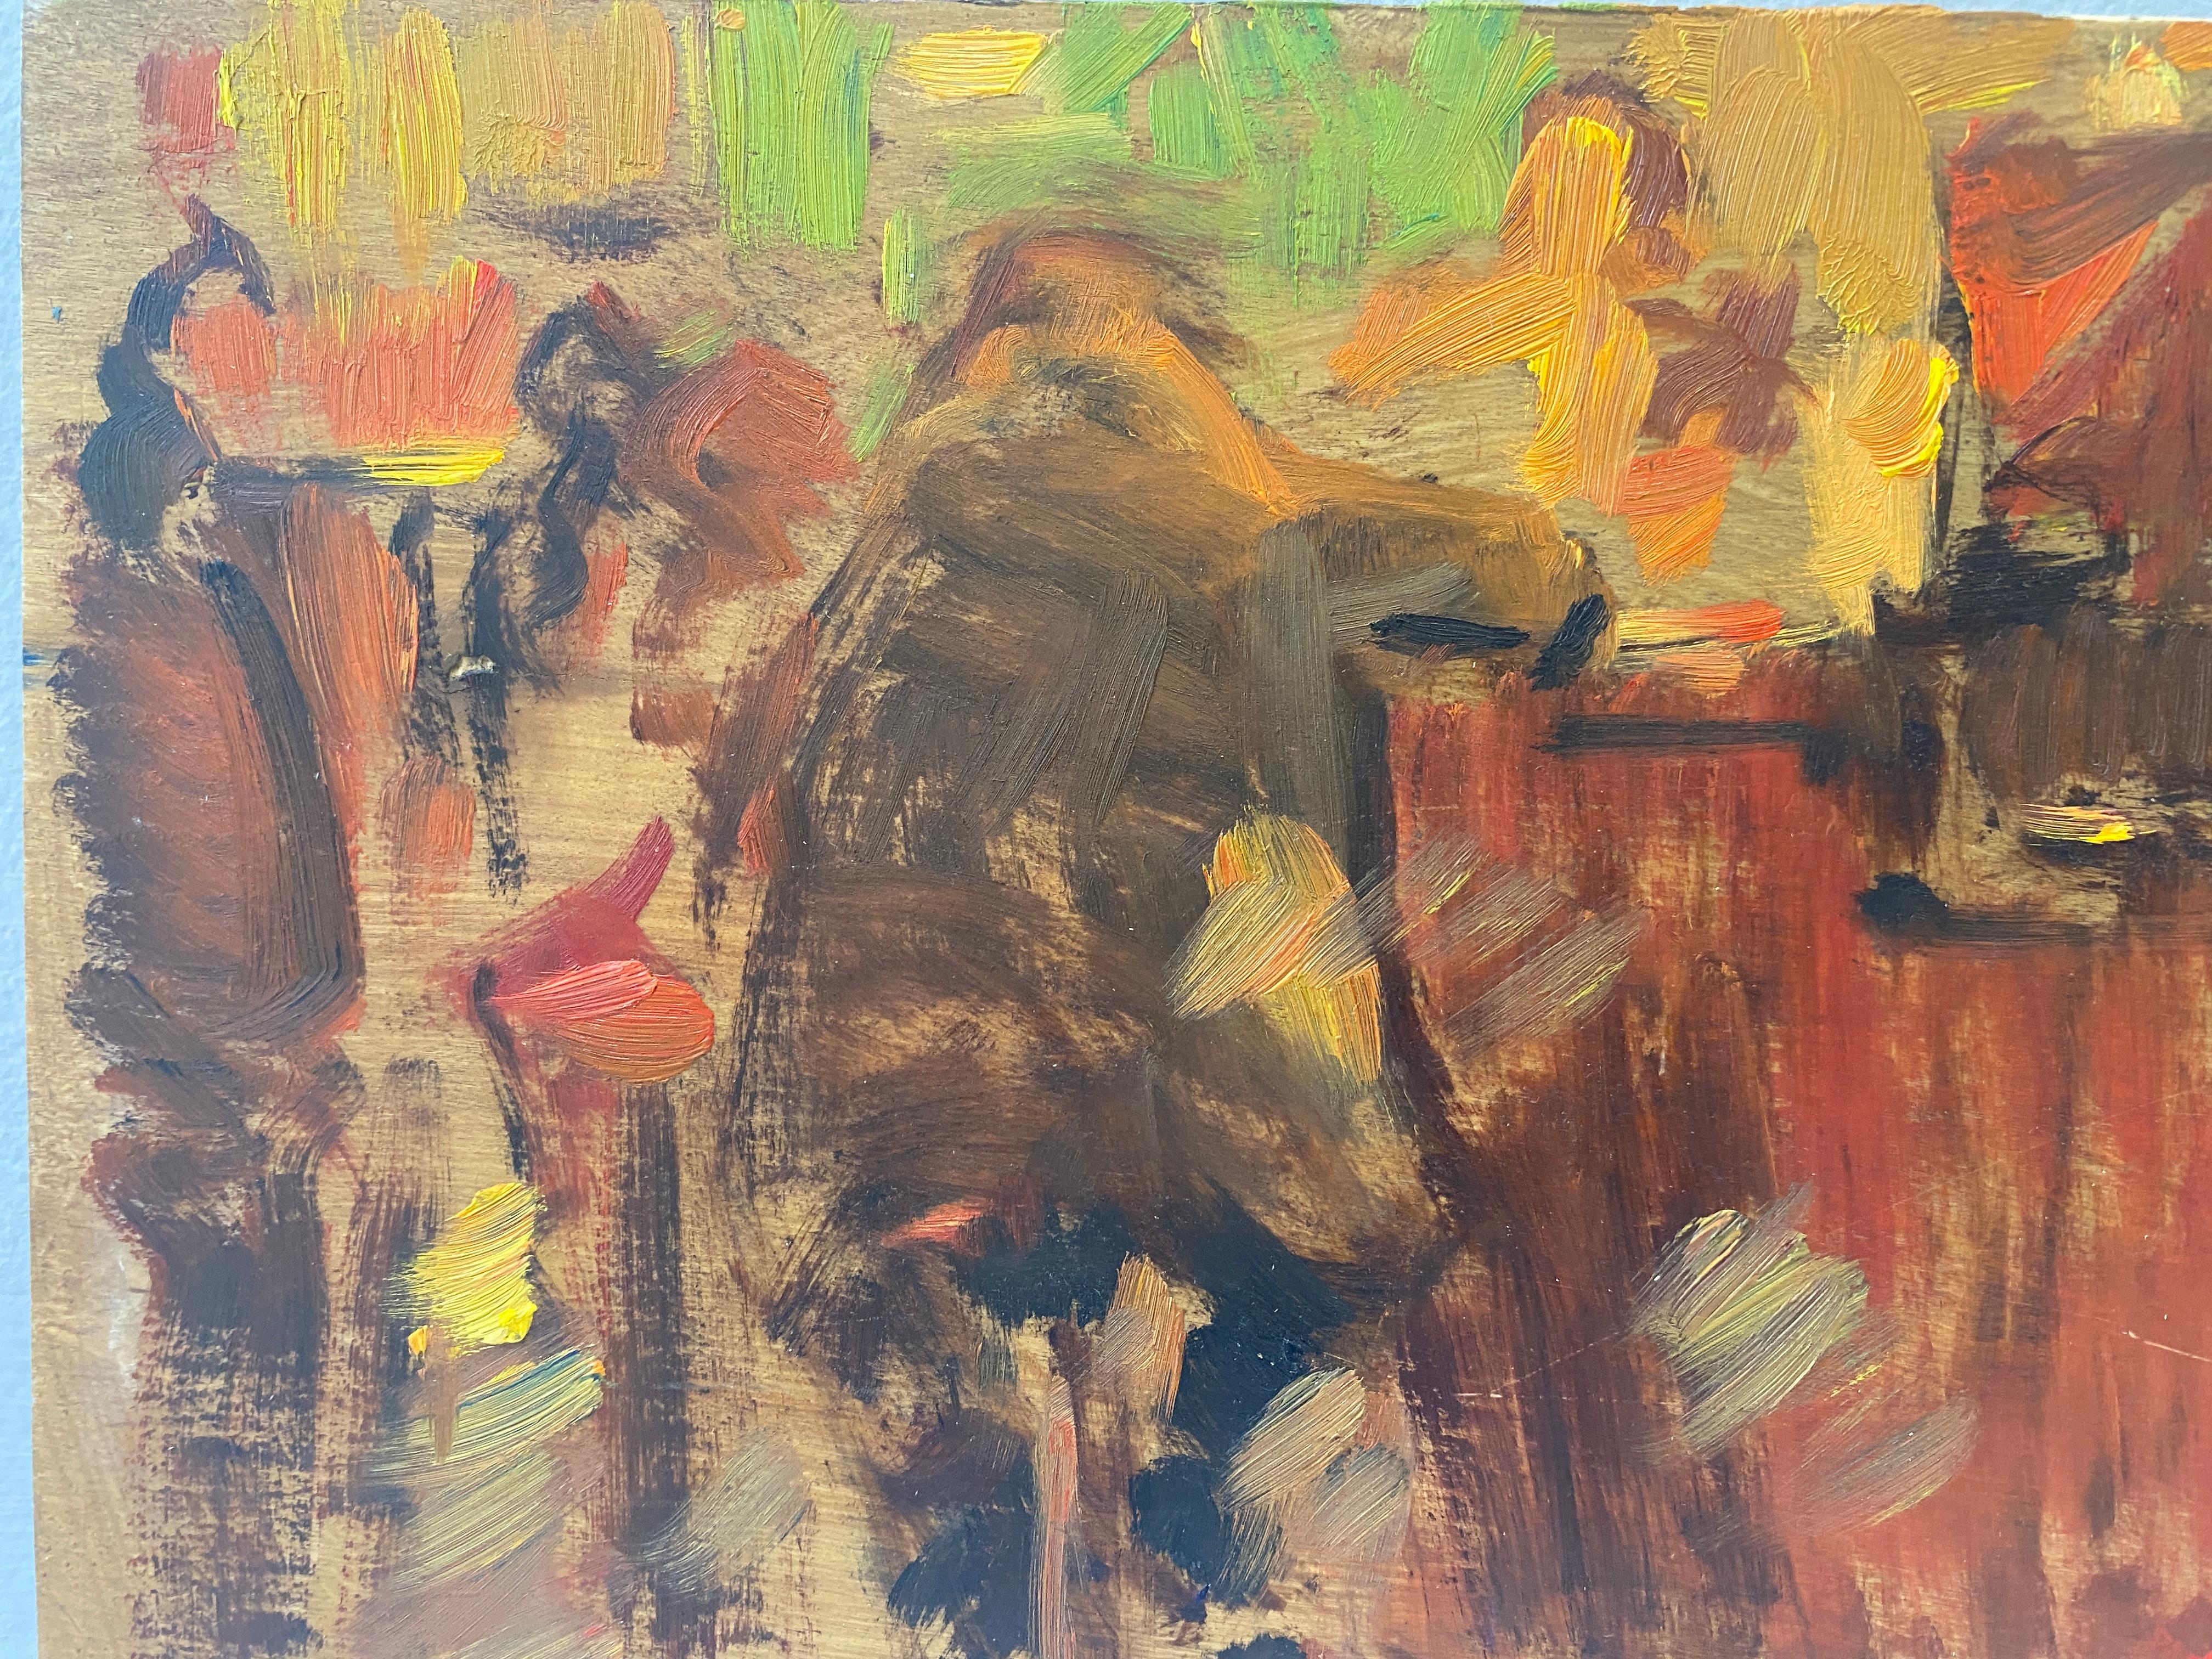 Une petite esquisse de l'impressionniste américain Ben Fenske. Peint sur place dans un pub local, Ben Fenske esquisse une scène de bar incohérente. L'obscurité des formes est peut-être un clin d'œil à l'état d'ébriété dans lequel l'alcool nous